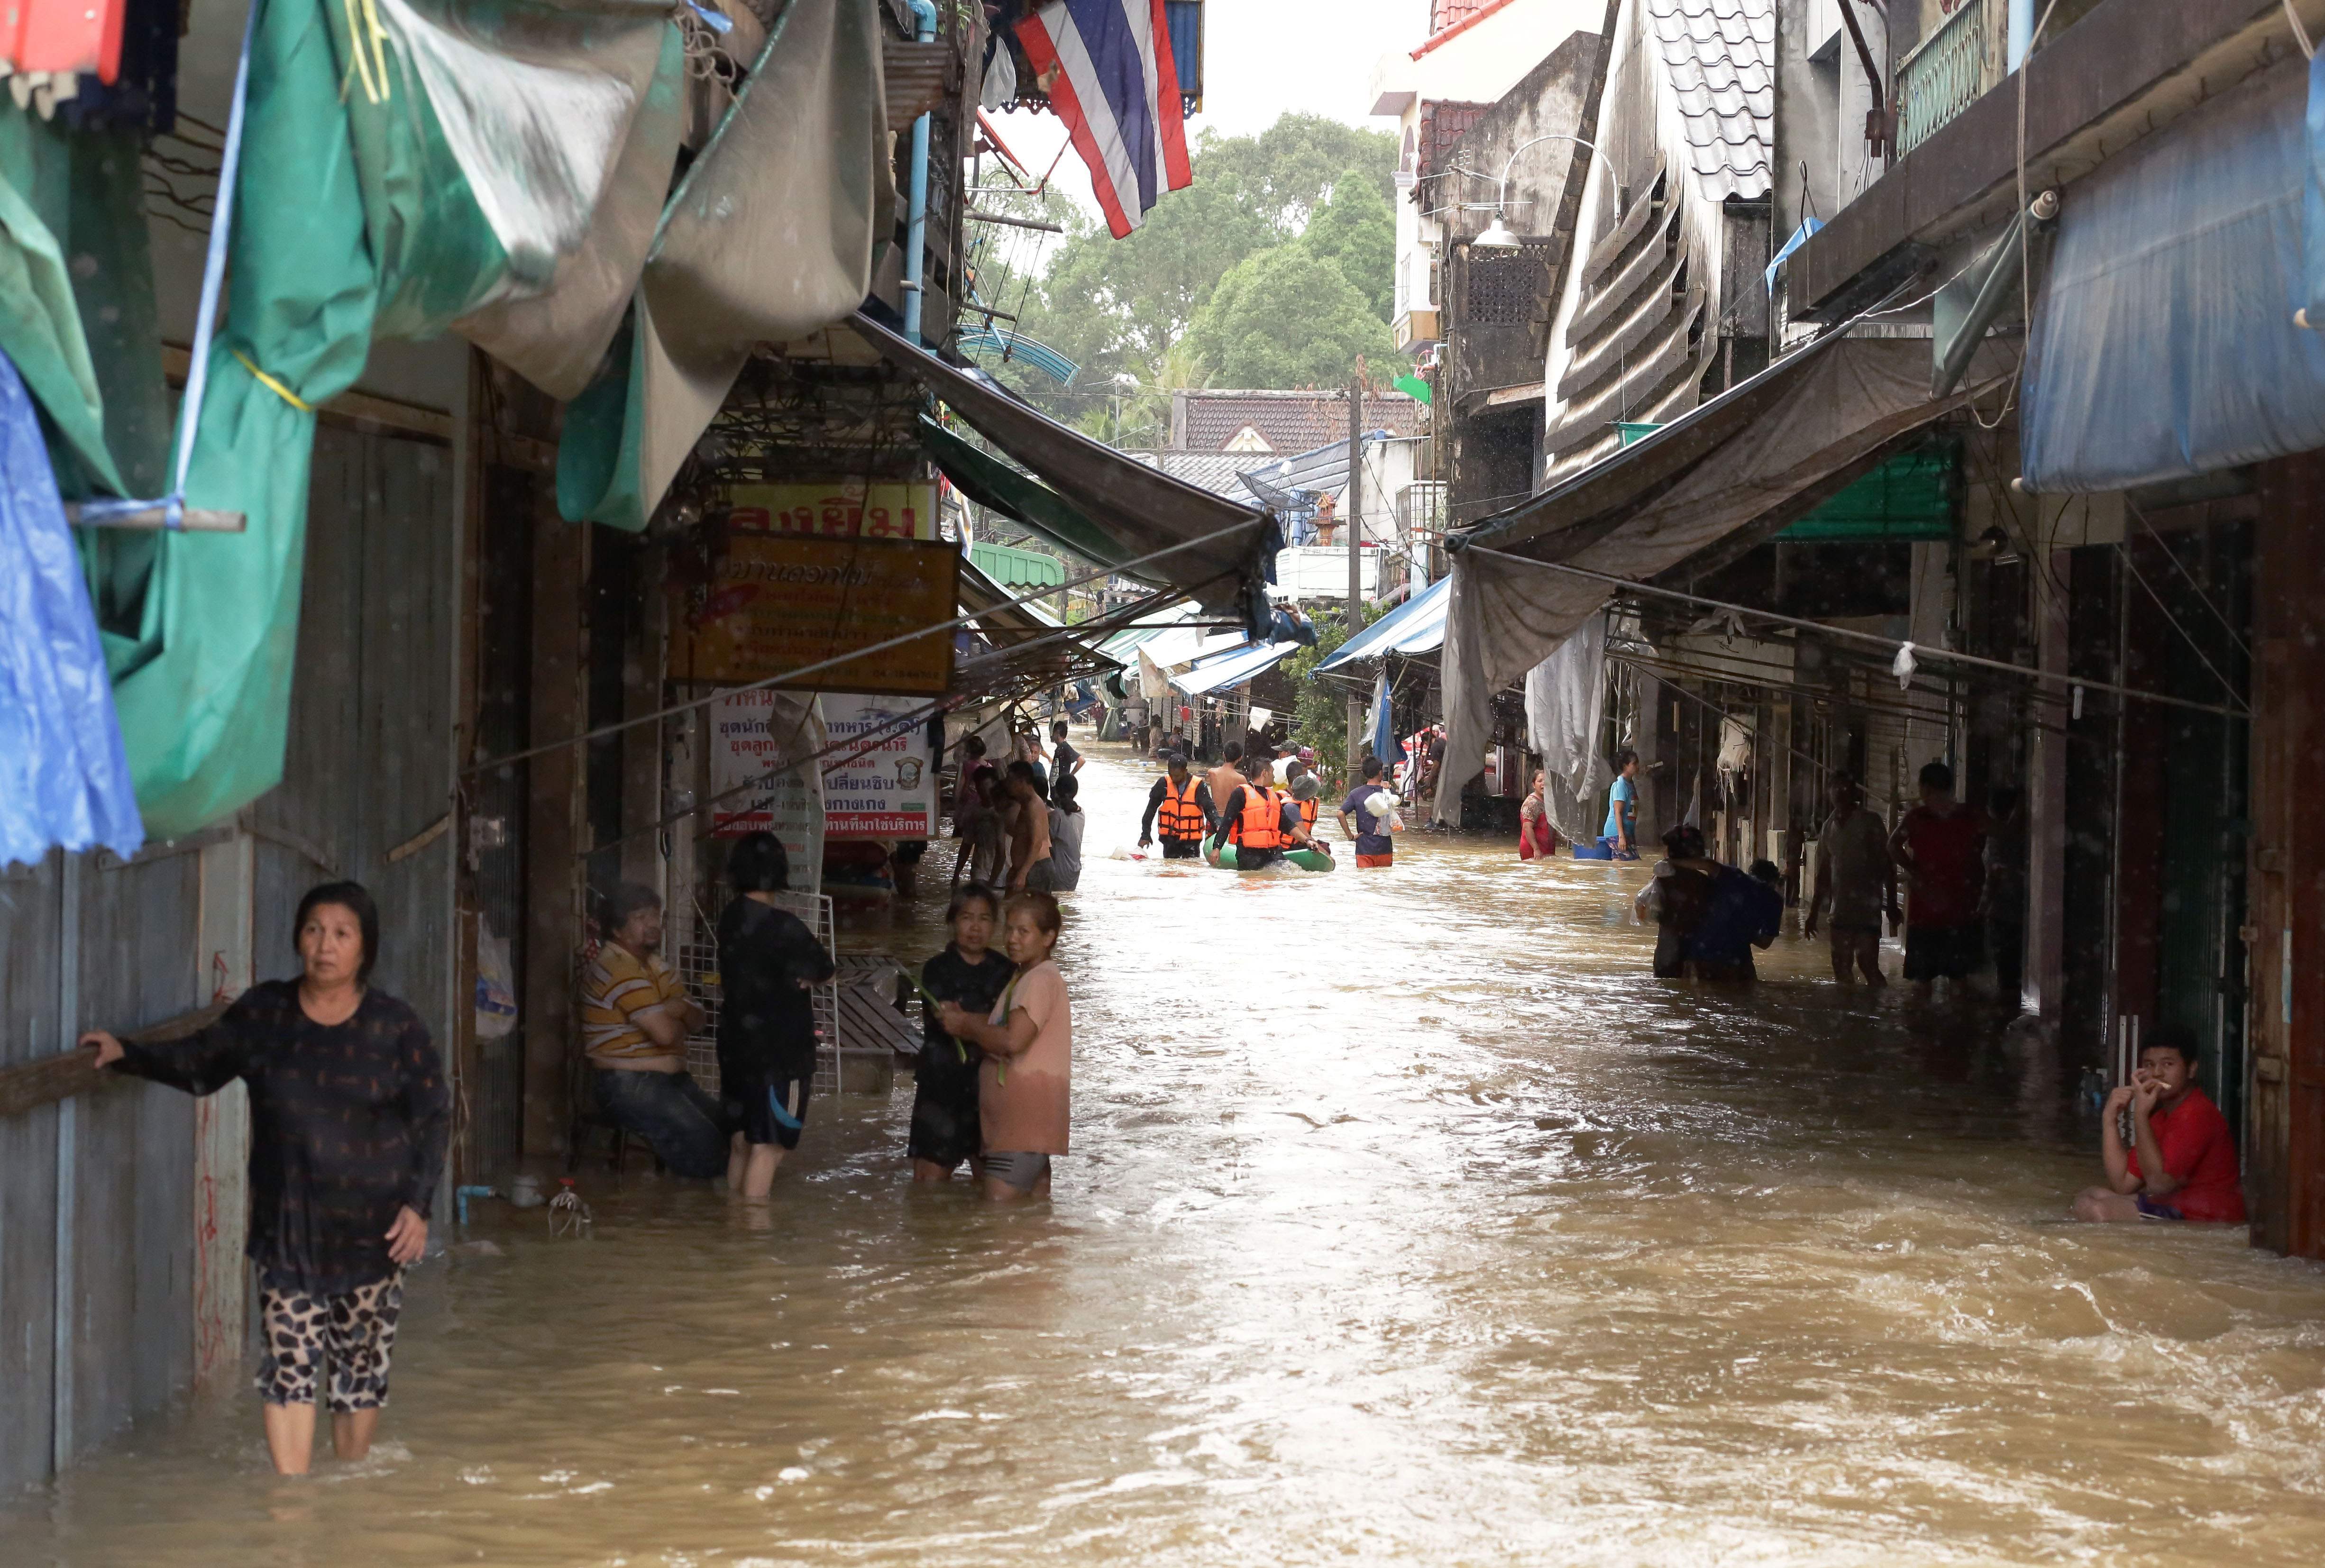 سكان فى إحدى القرى فى تايلاند خارج يقفون خارج منازلهم بسبب فيضانات مياه الأمطار - أ ف ب